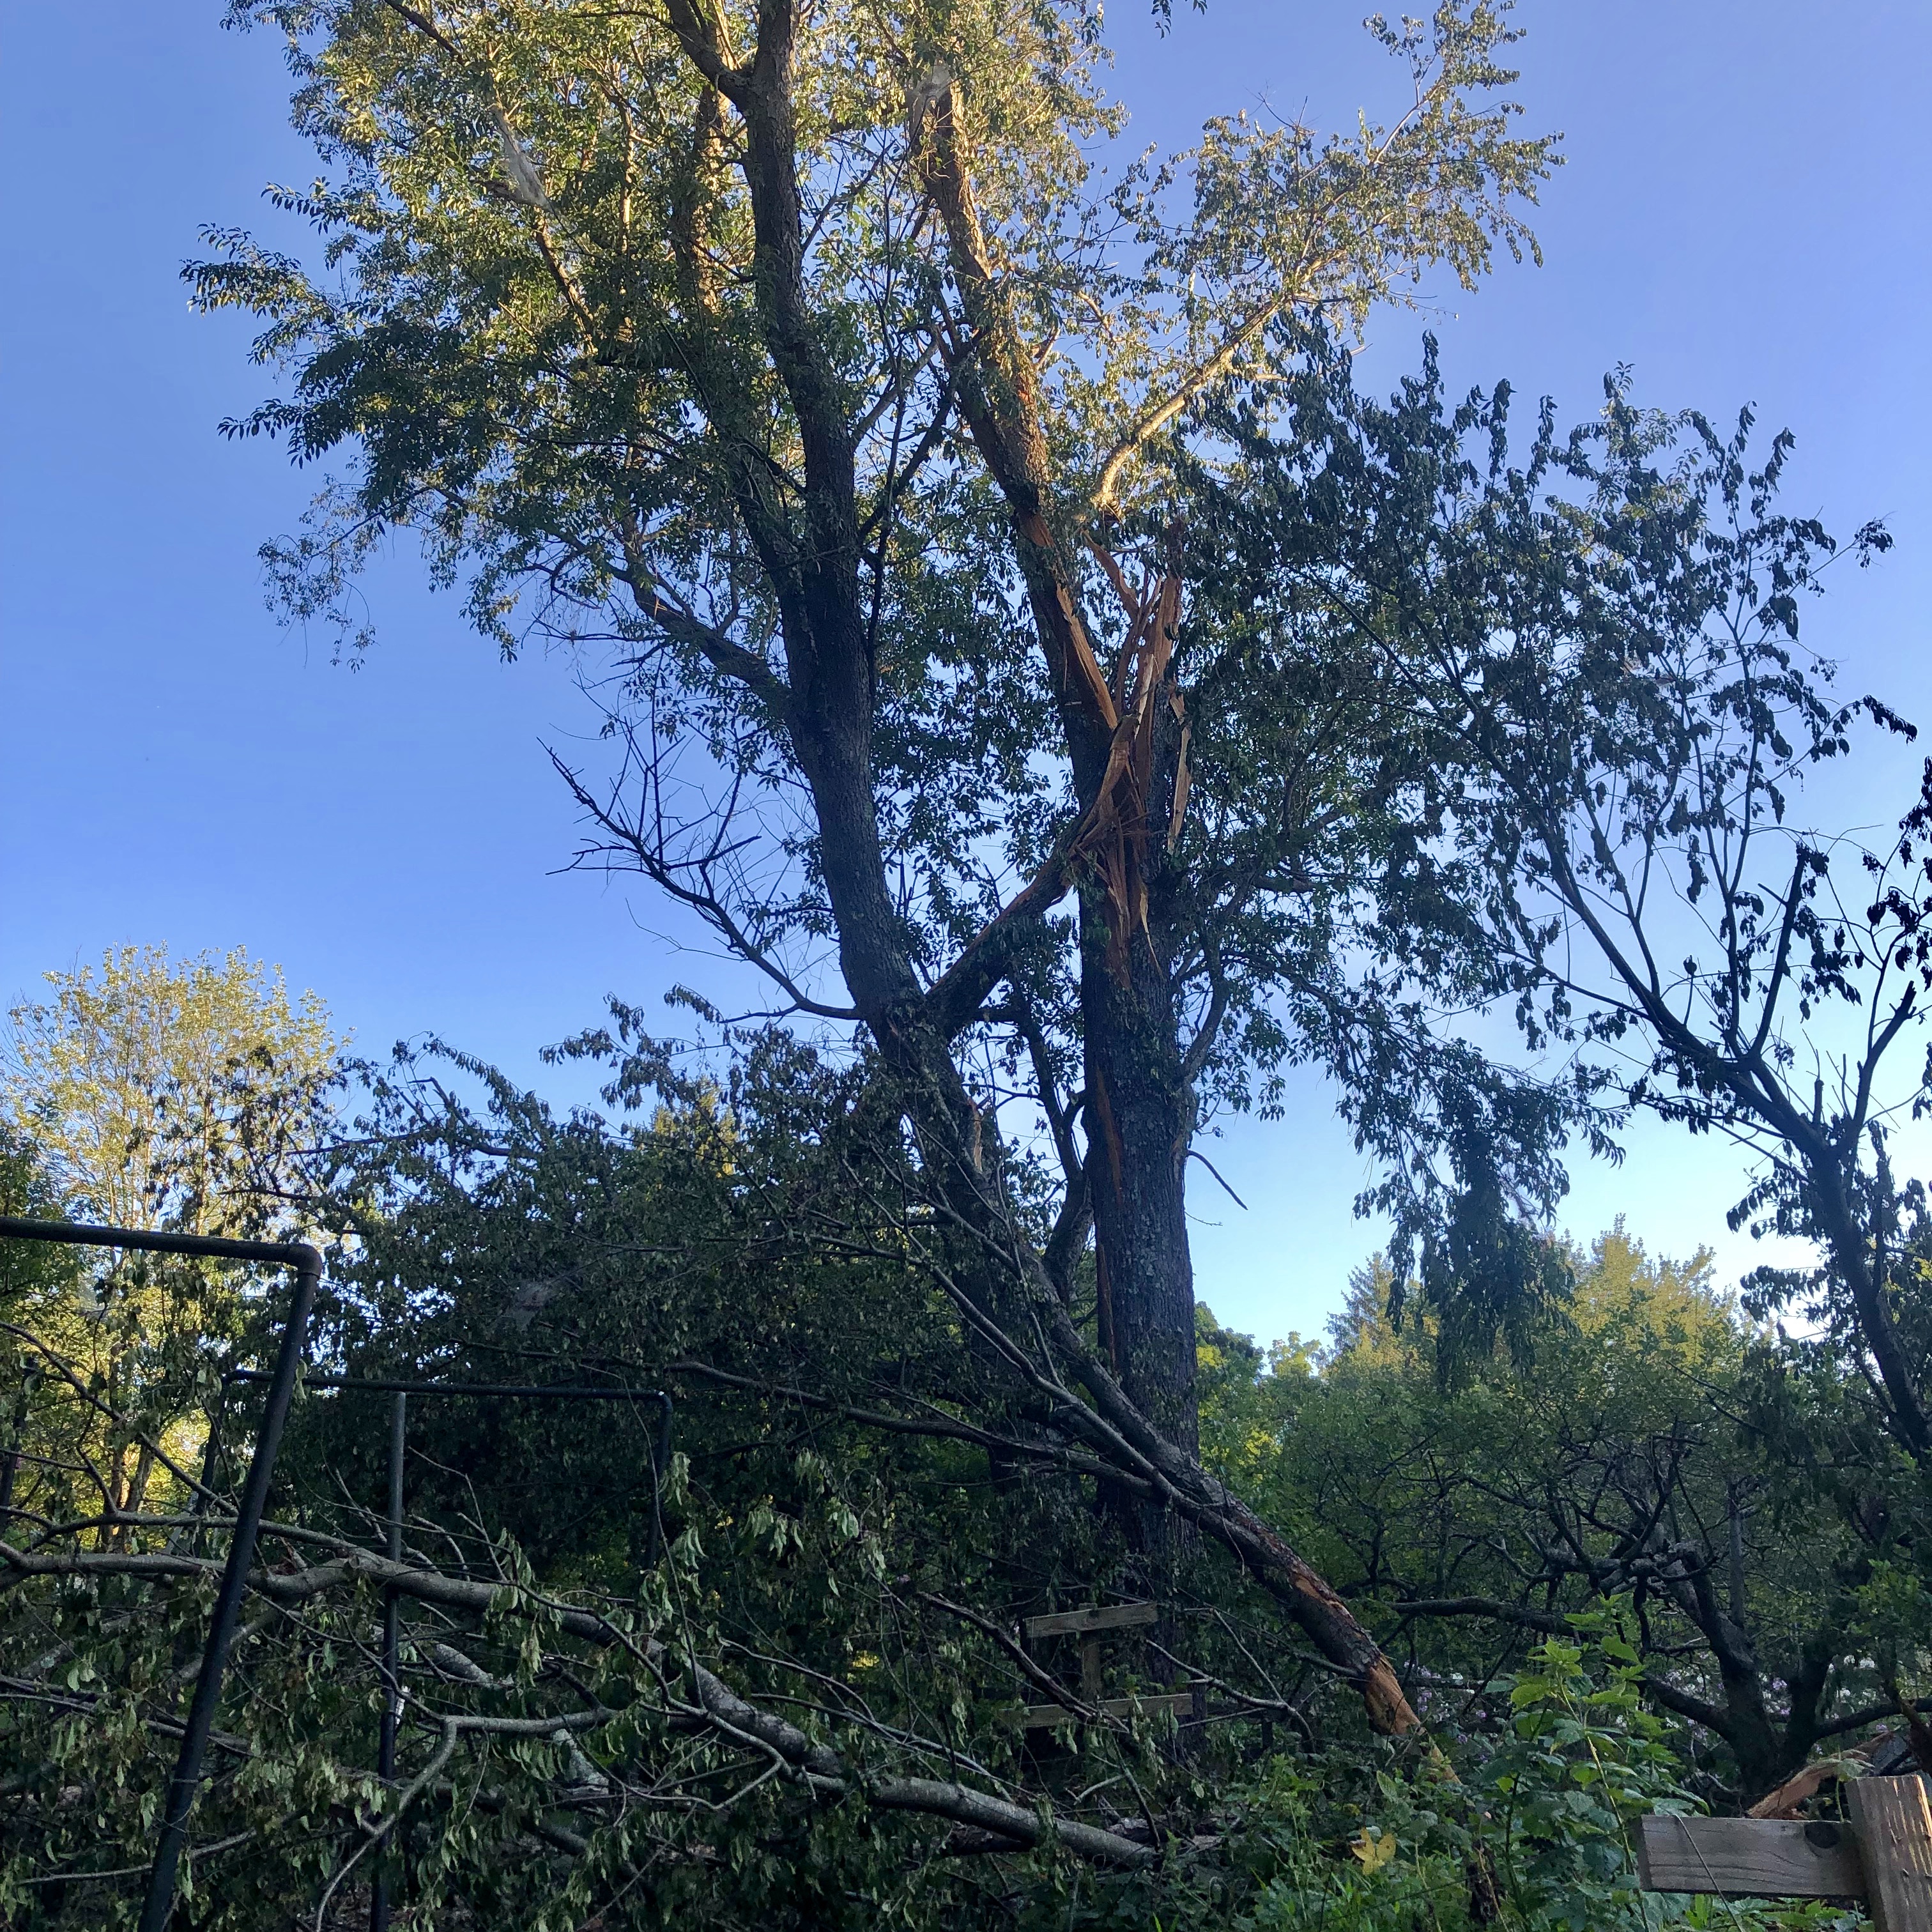 A tree struck by lightning in Great Falls, VA